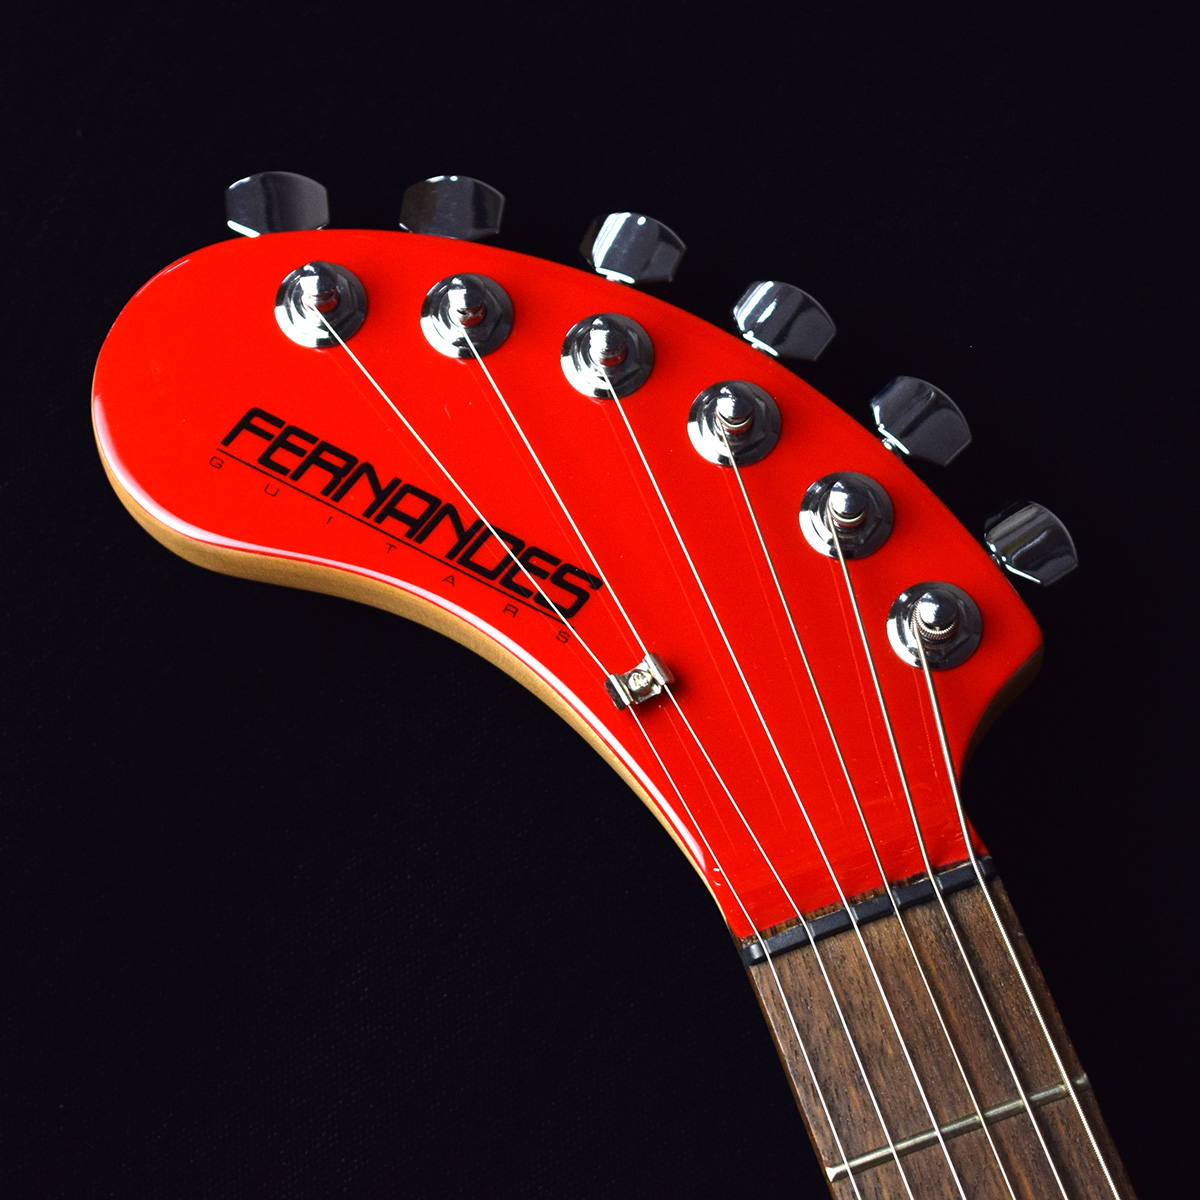 ZO-3 (RED) レフトハンドモデル レフティ 左利き用 - エレキギター